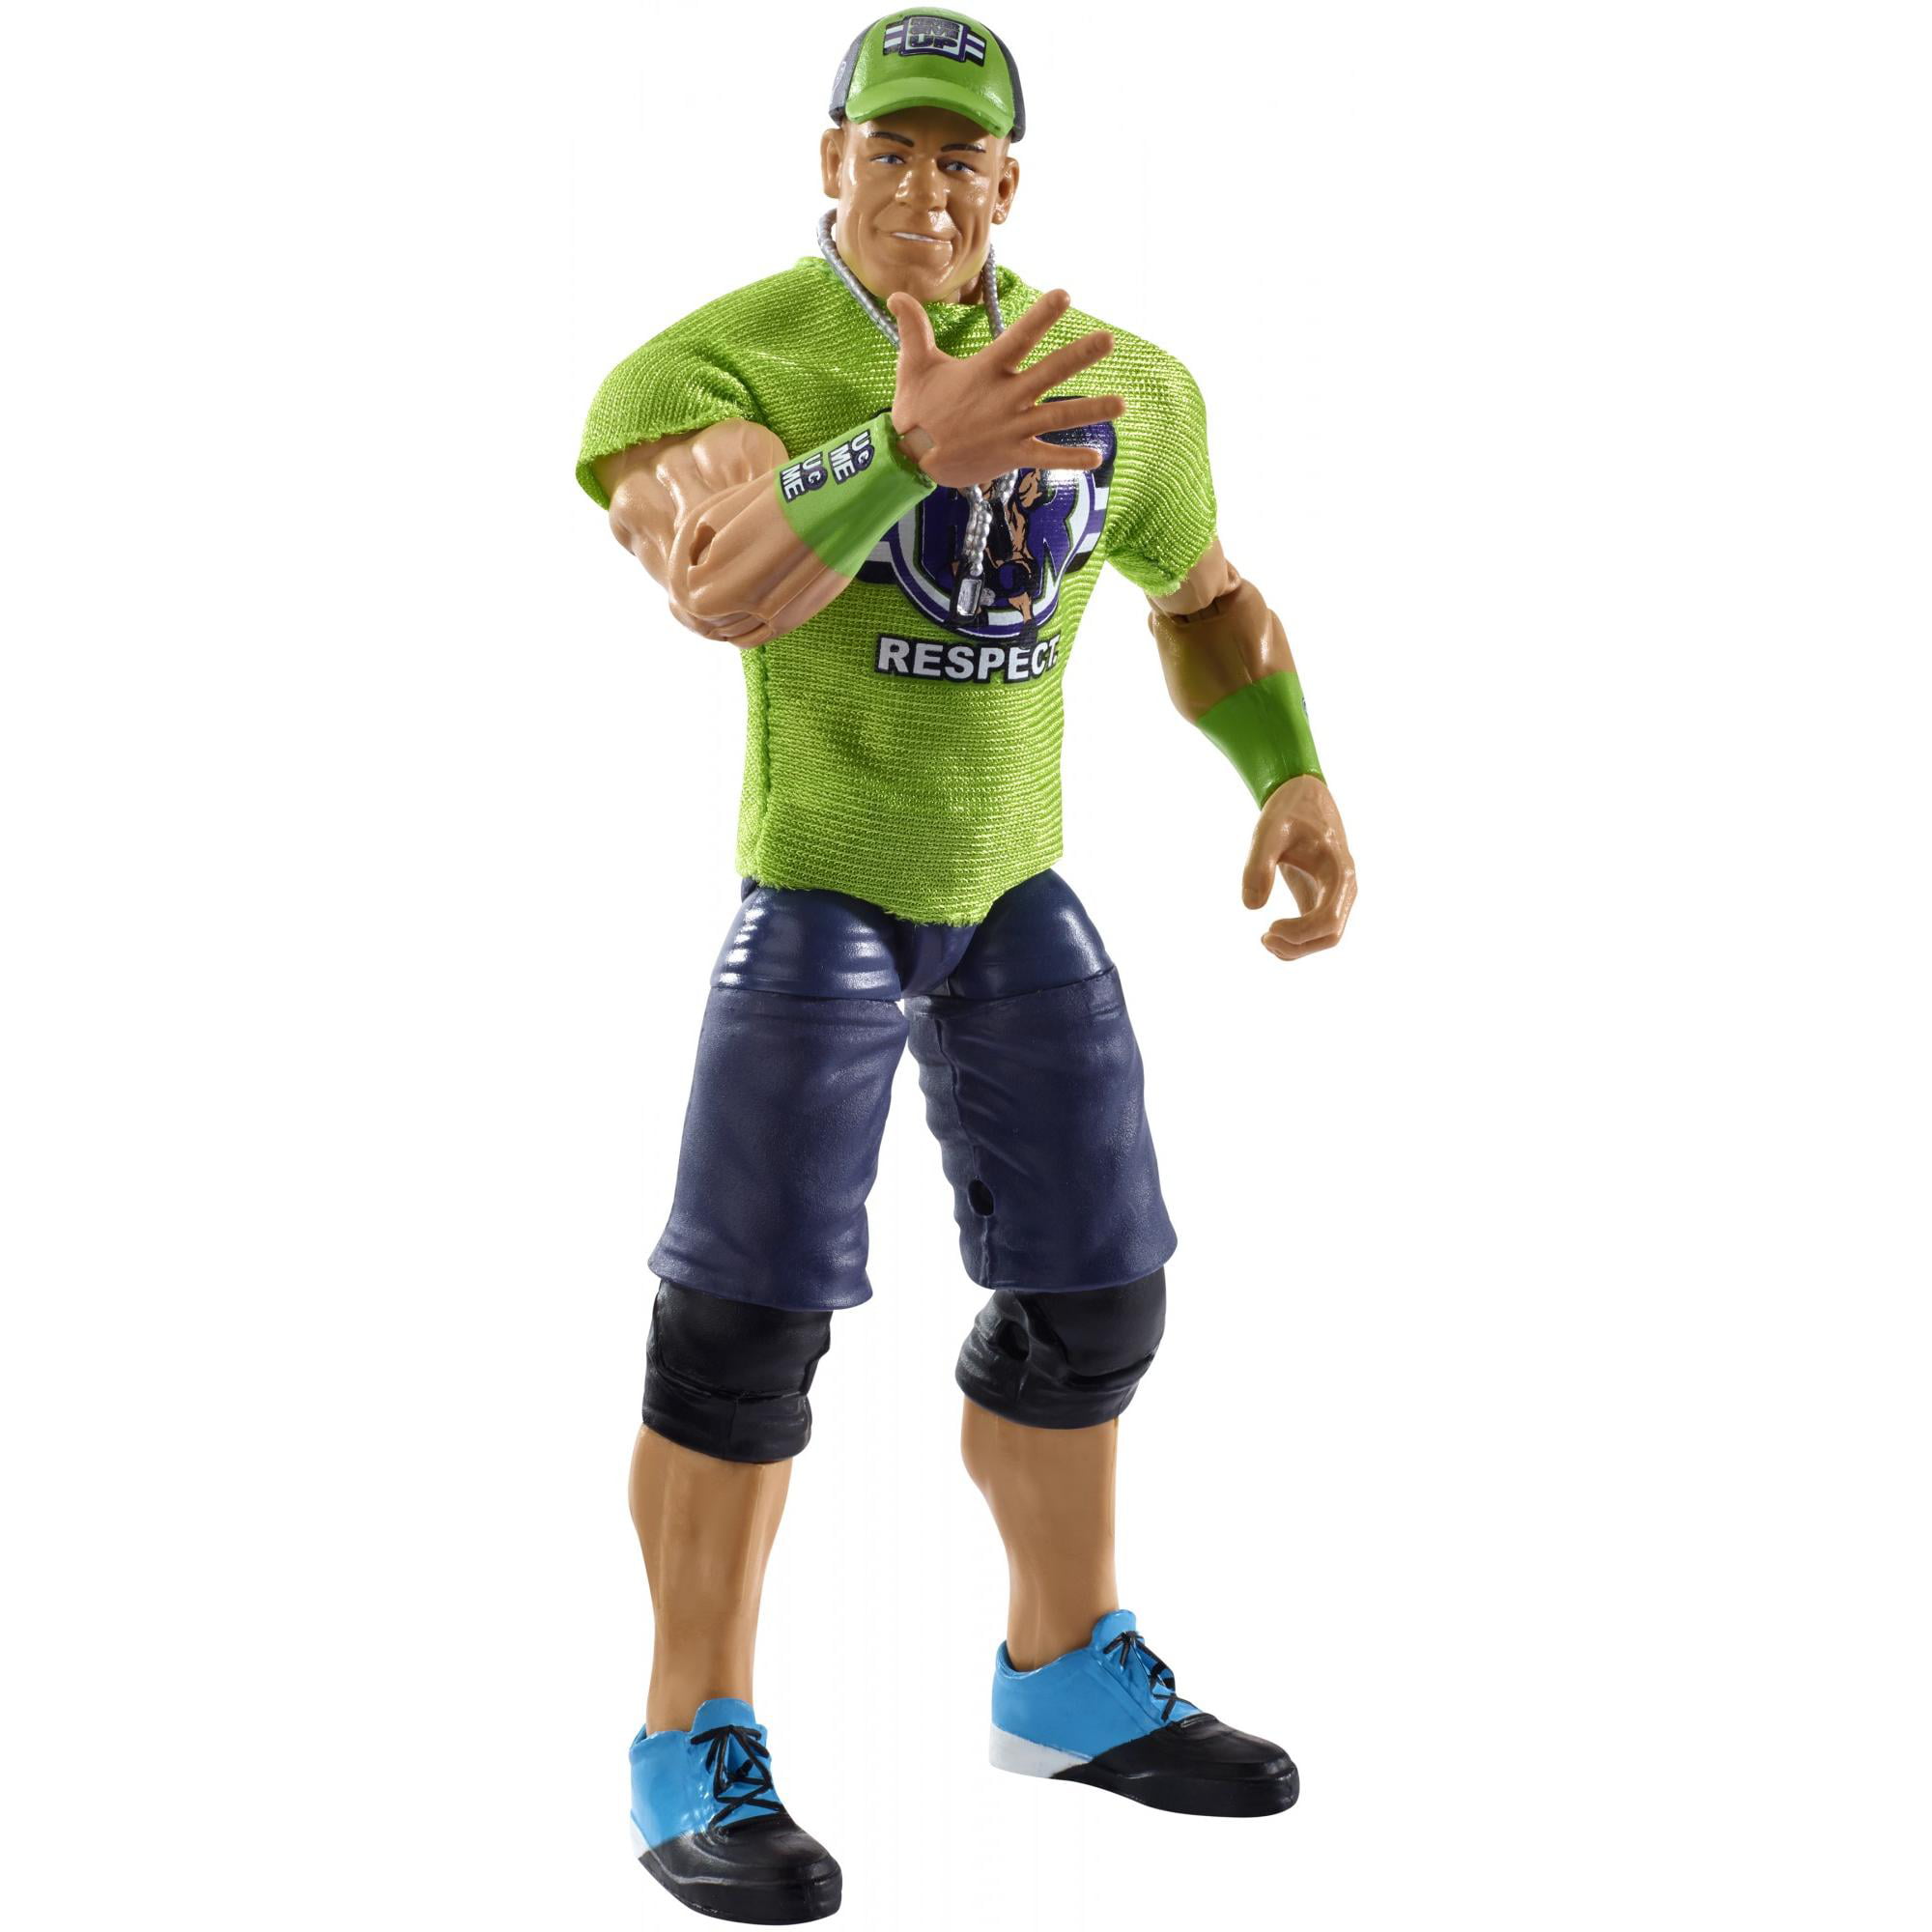 Details about   Mattel WWE Elite Collection John Cena Action Figure 